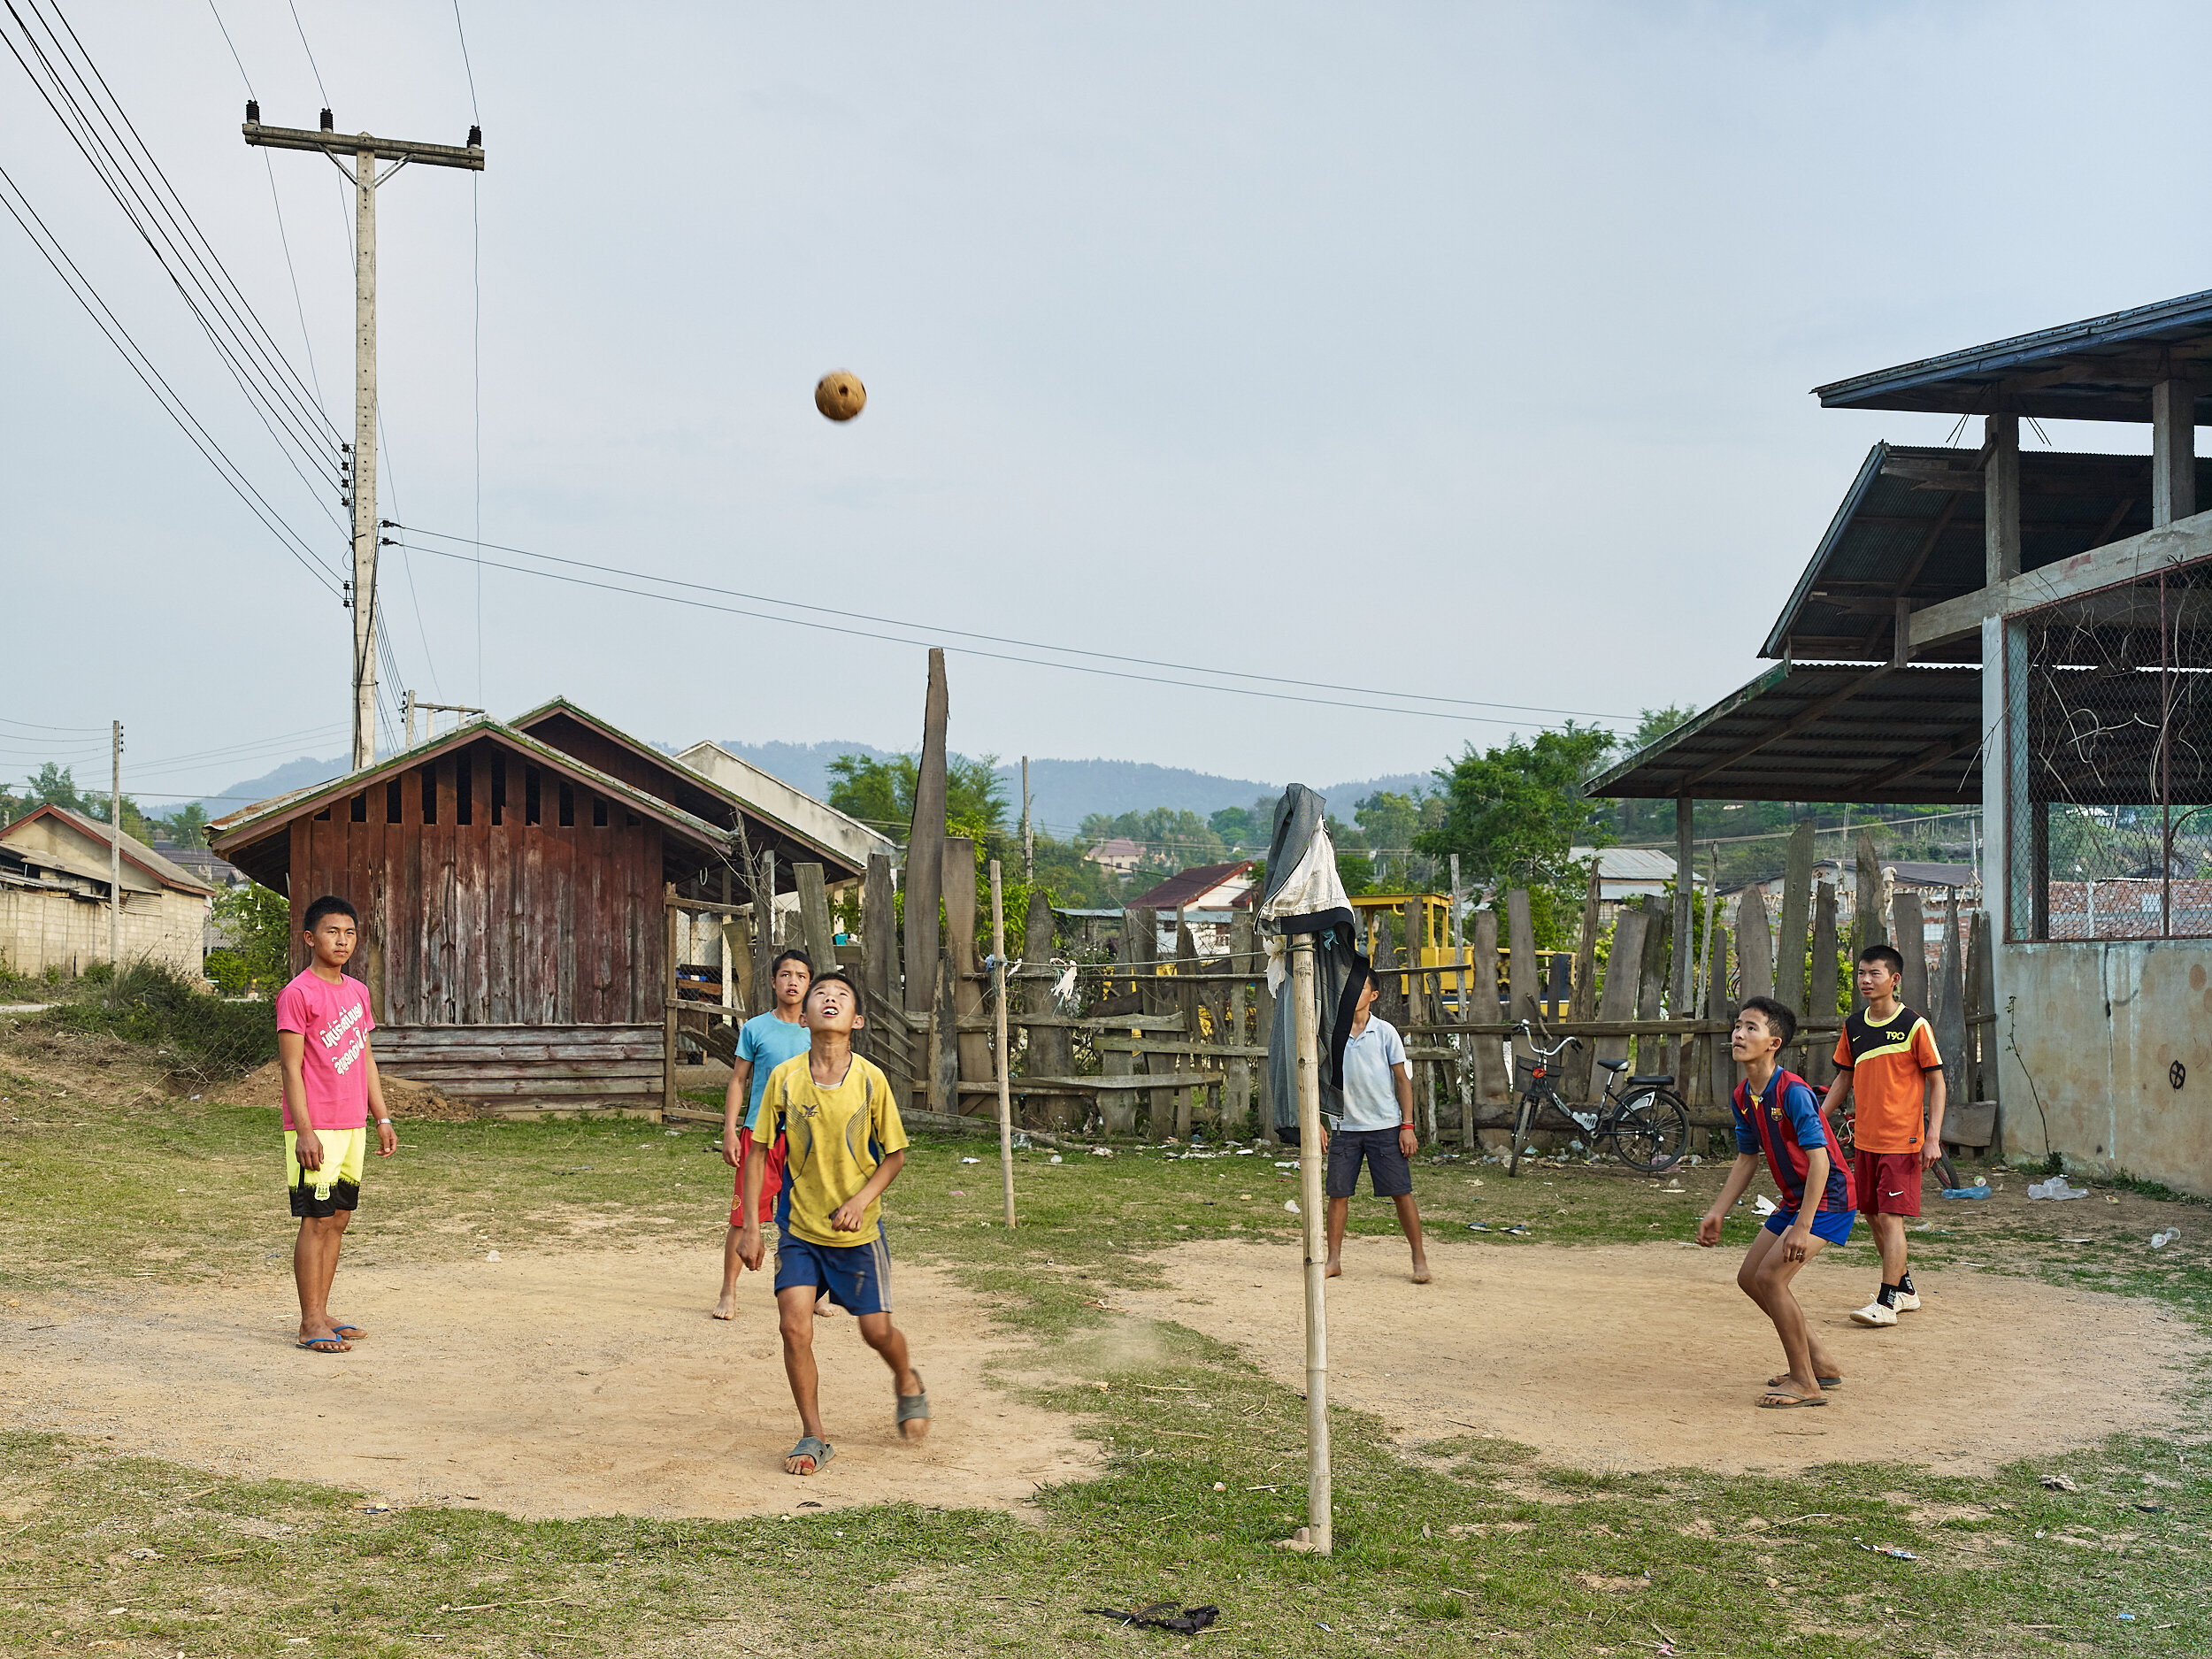  kick ball, Phonsavan, Laos, 2016 